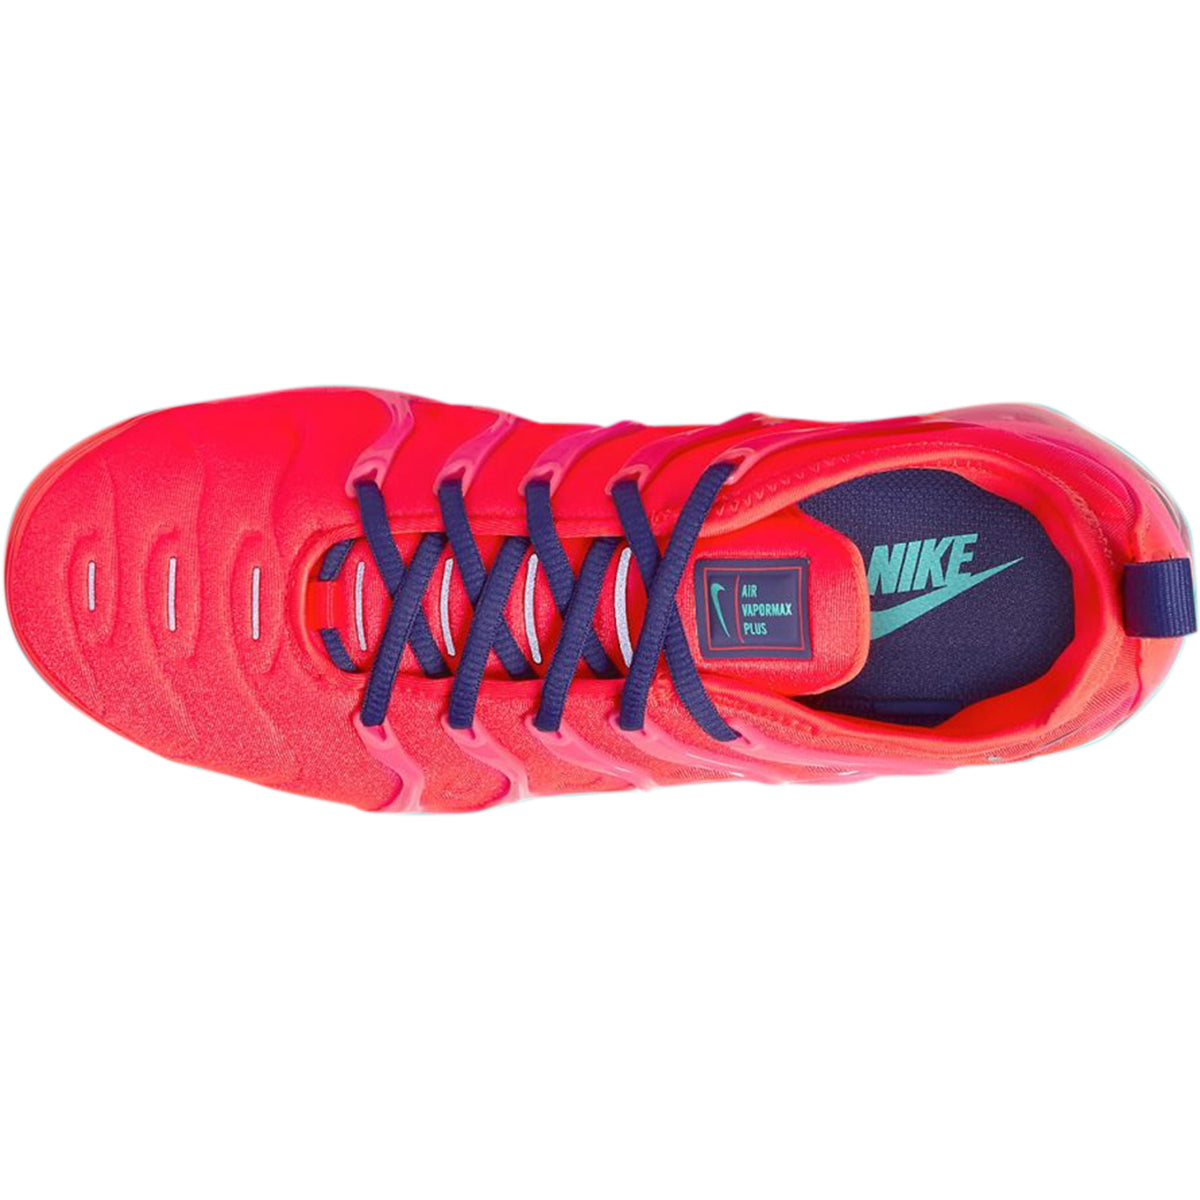 Junjin111 Sepatu Lari Desain Nike Air VaporMax Plus Warna